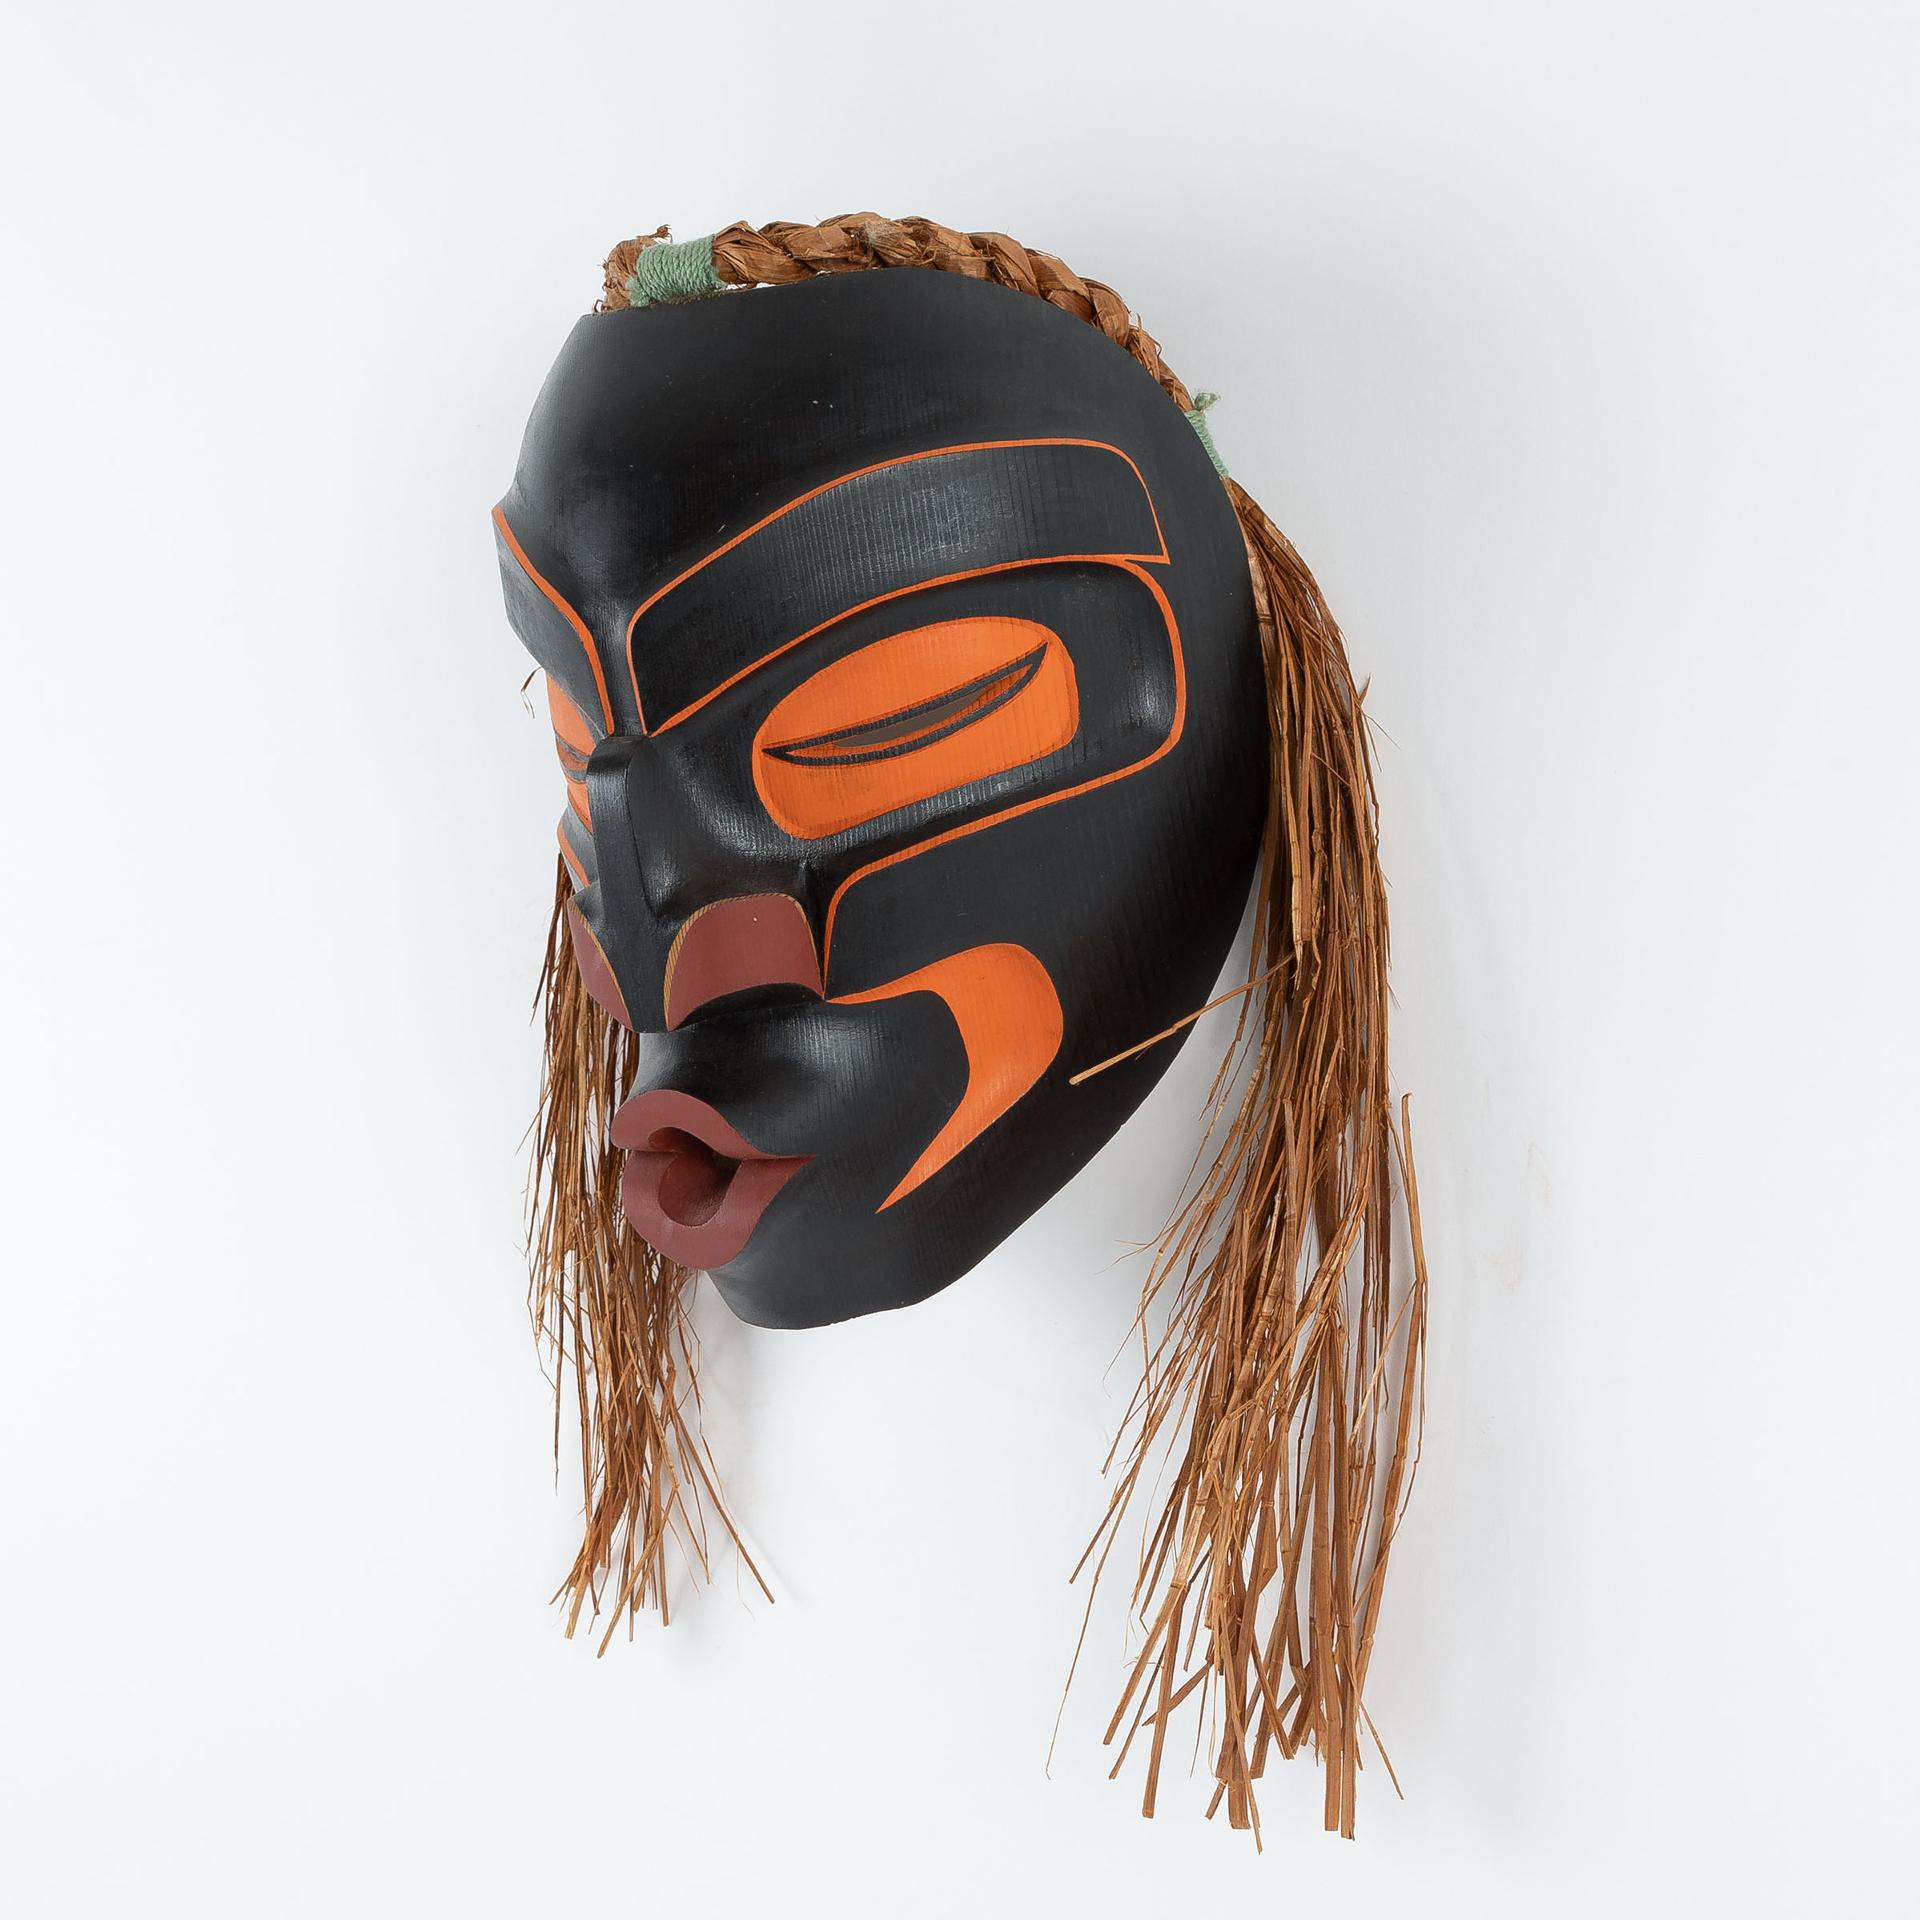 Charlie Johnson - Tsonoqua Mask